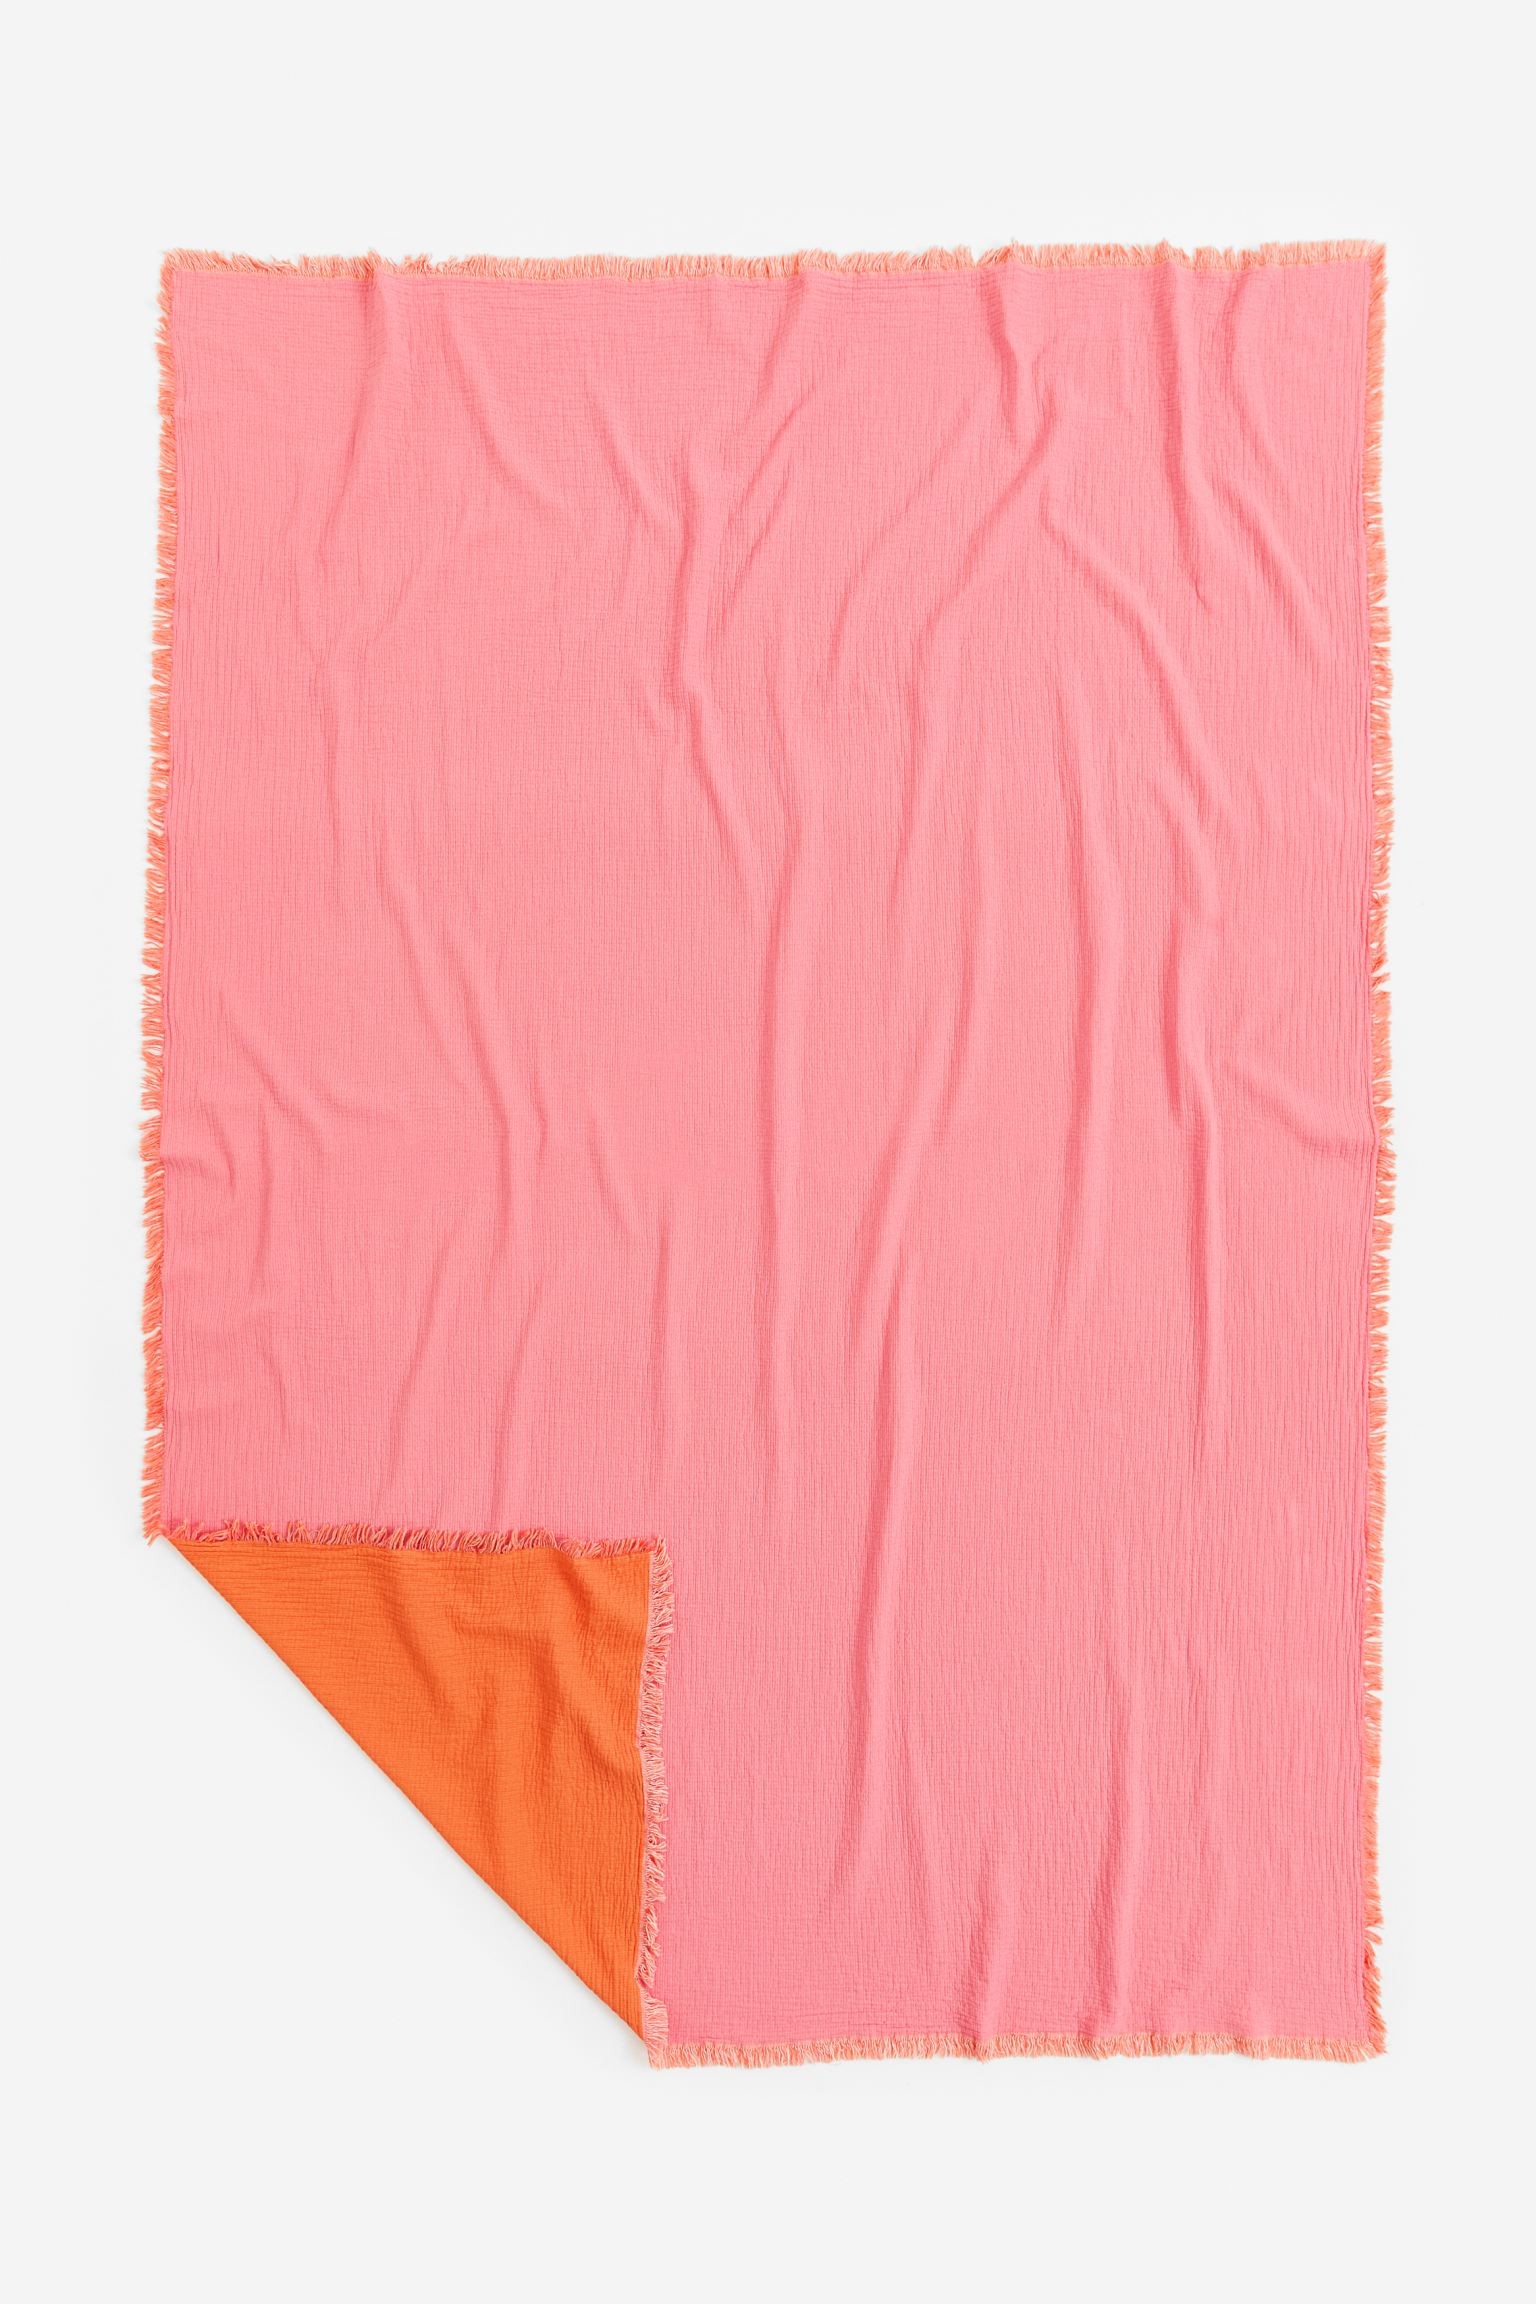 H&M Home Бавовняне покривало, античний рожевий, 180x250 1115994002 | 1115994002